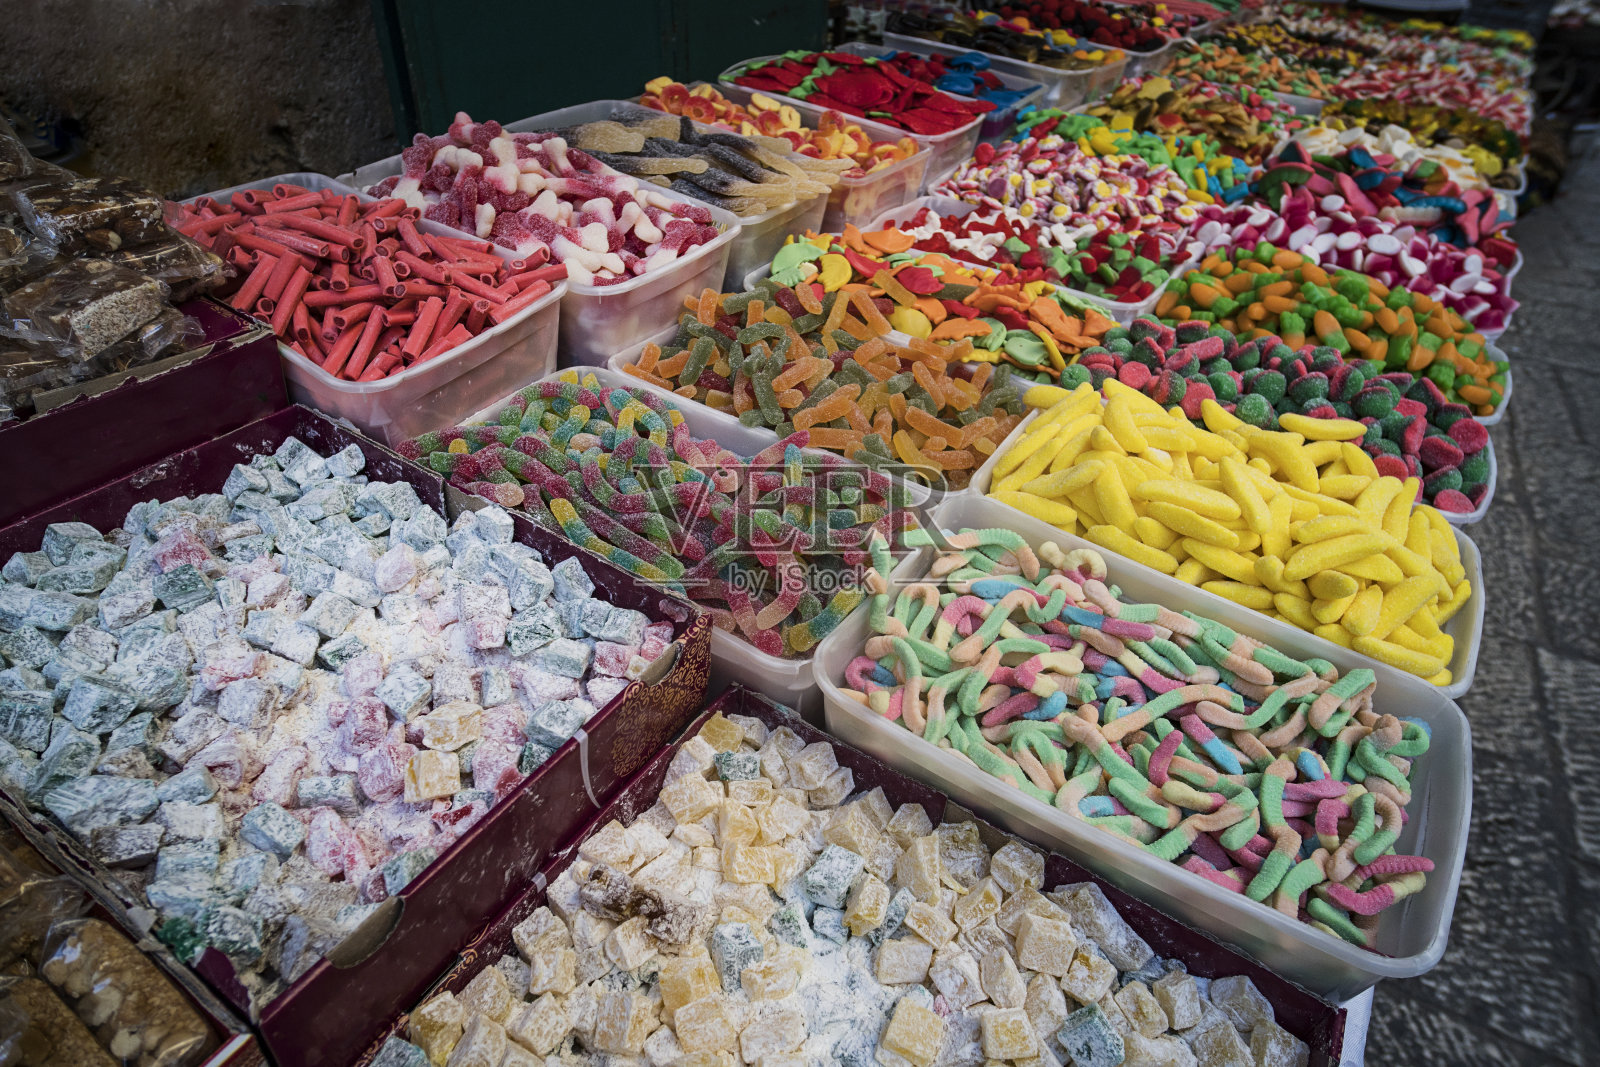 东方乐在露天食品市场出售。土耳其蛋糕，糖果，水果果冻，街头购物用的五颜六色的糖果。爱吃甜食的快乐。一排排甜蜜的摊位。各种照片摄影图片